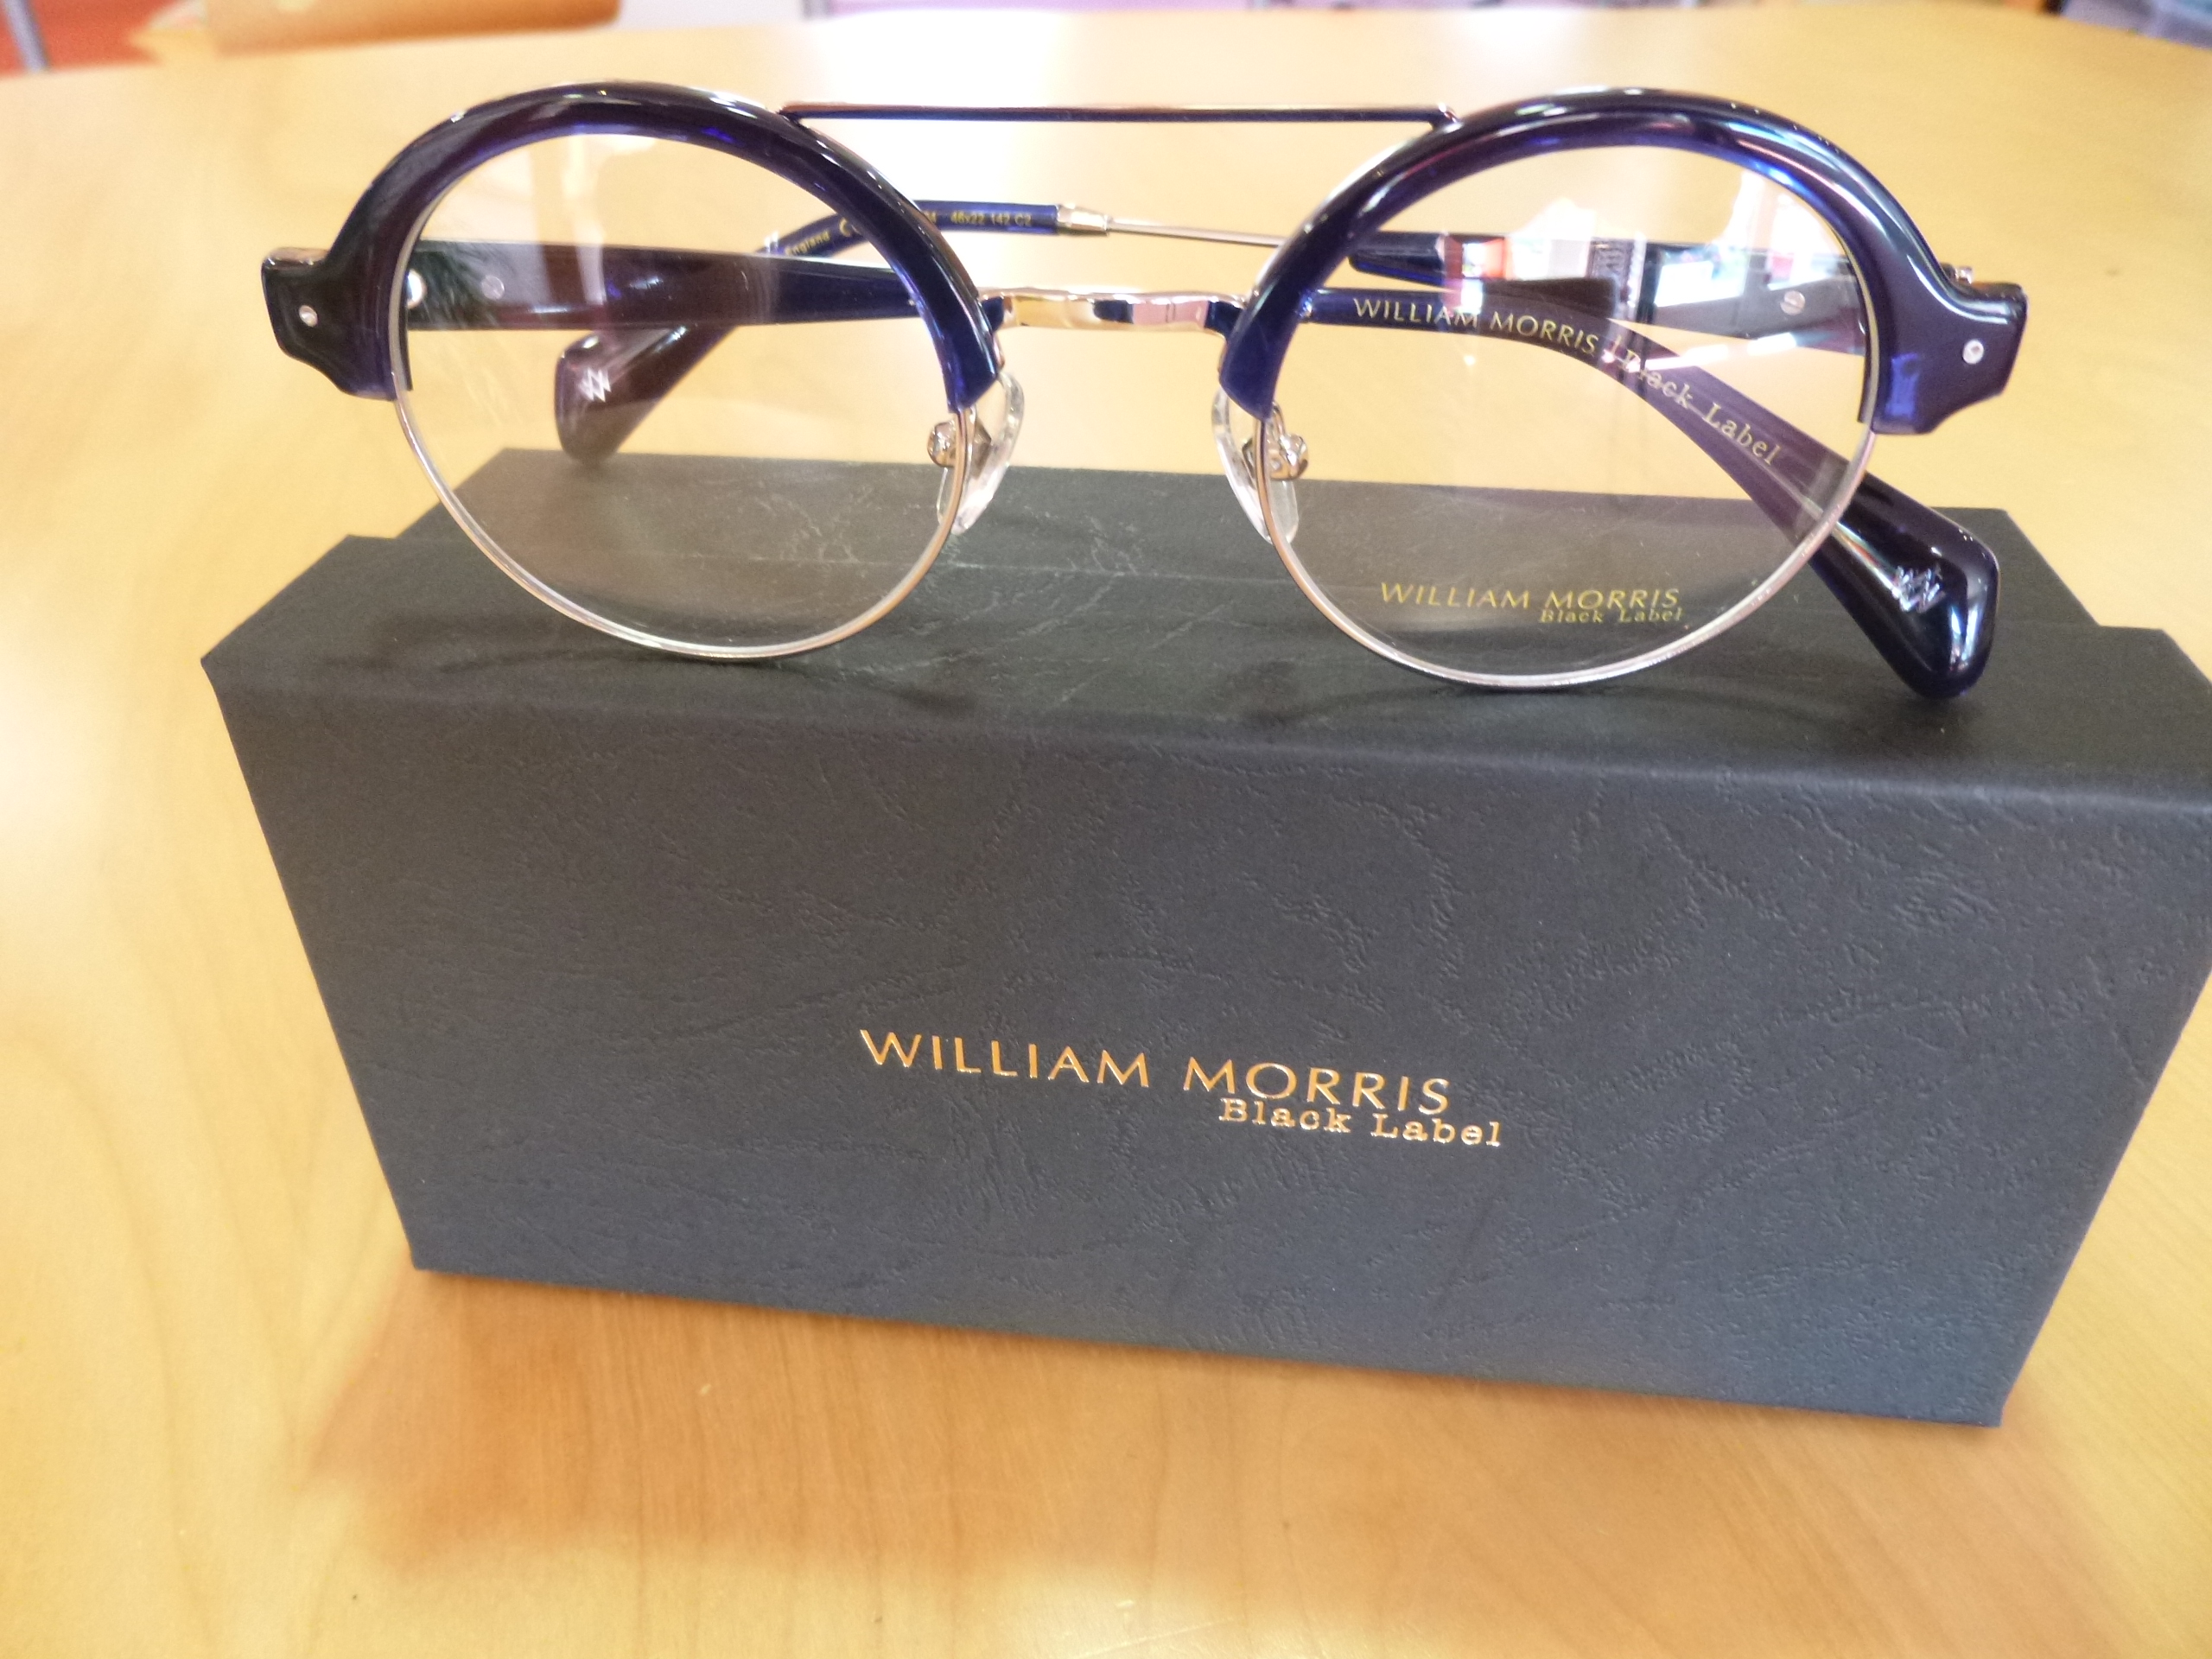 William Morris les lunettes à l’esprit British